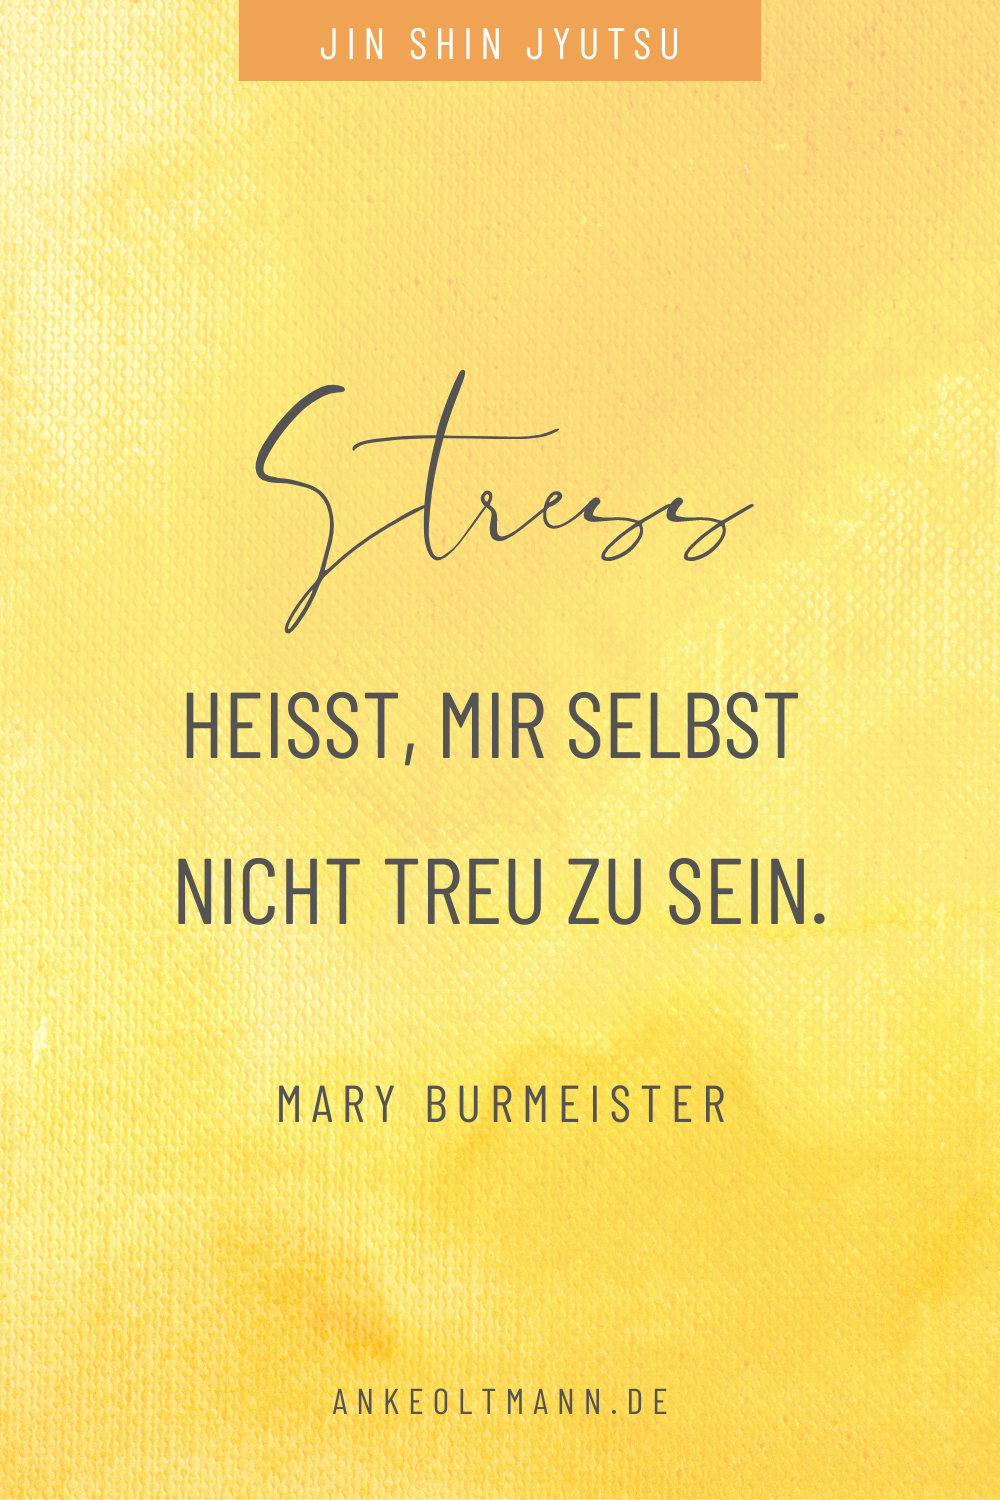 Zitate von Mary Burmeister - Stress